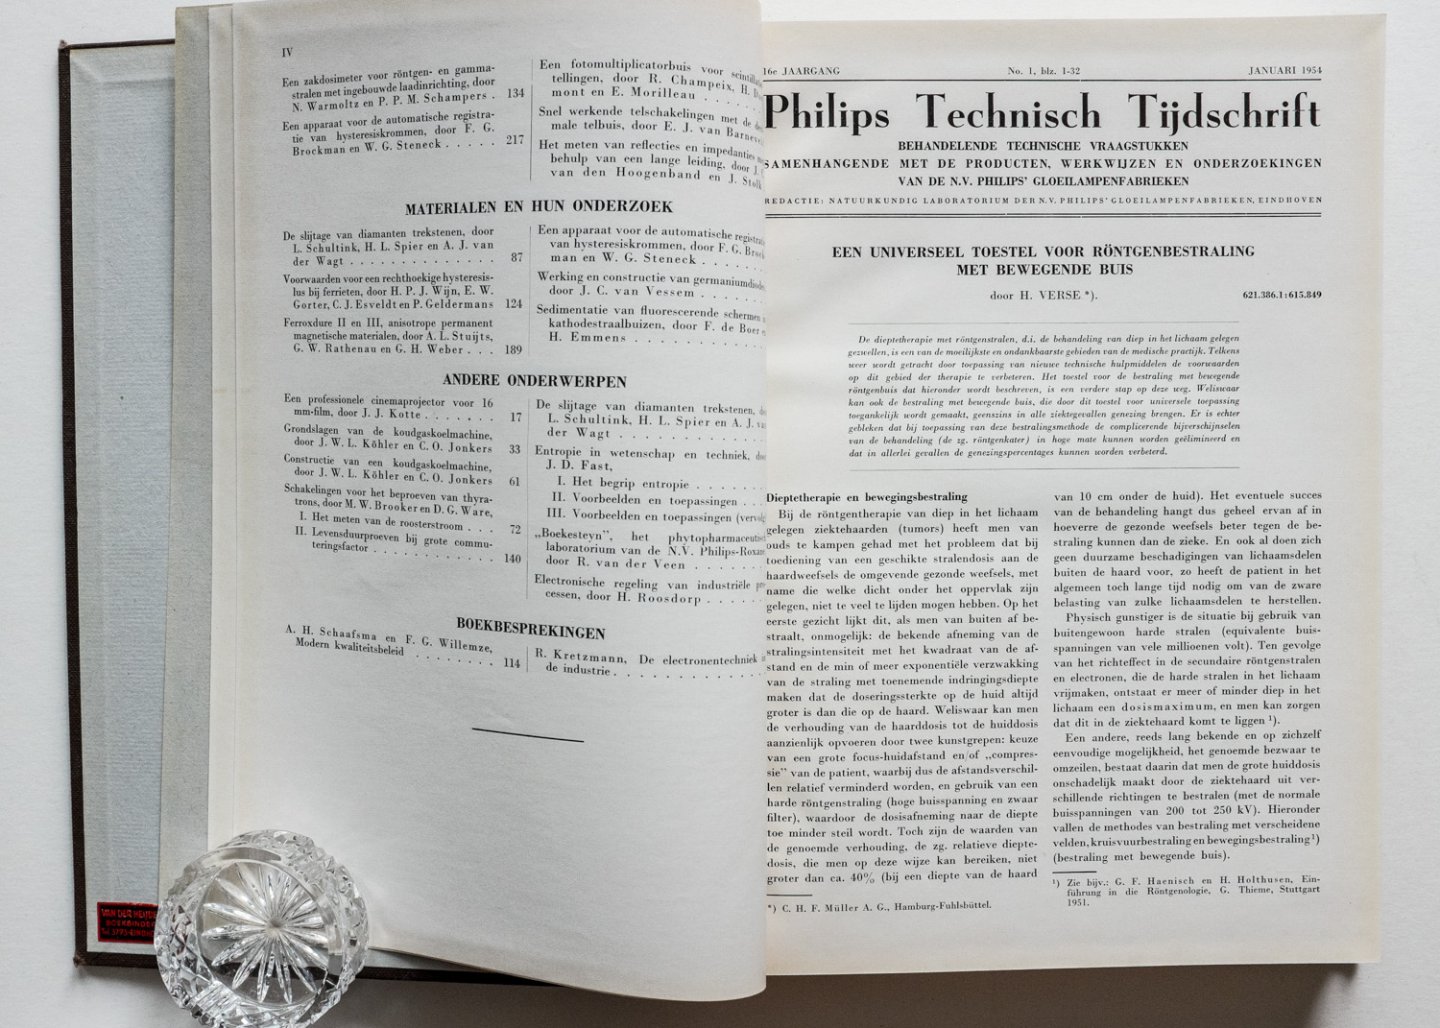  - Philips Technisch Tijdschrift - 16e jaargang 1954